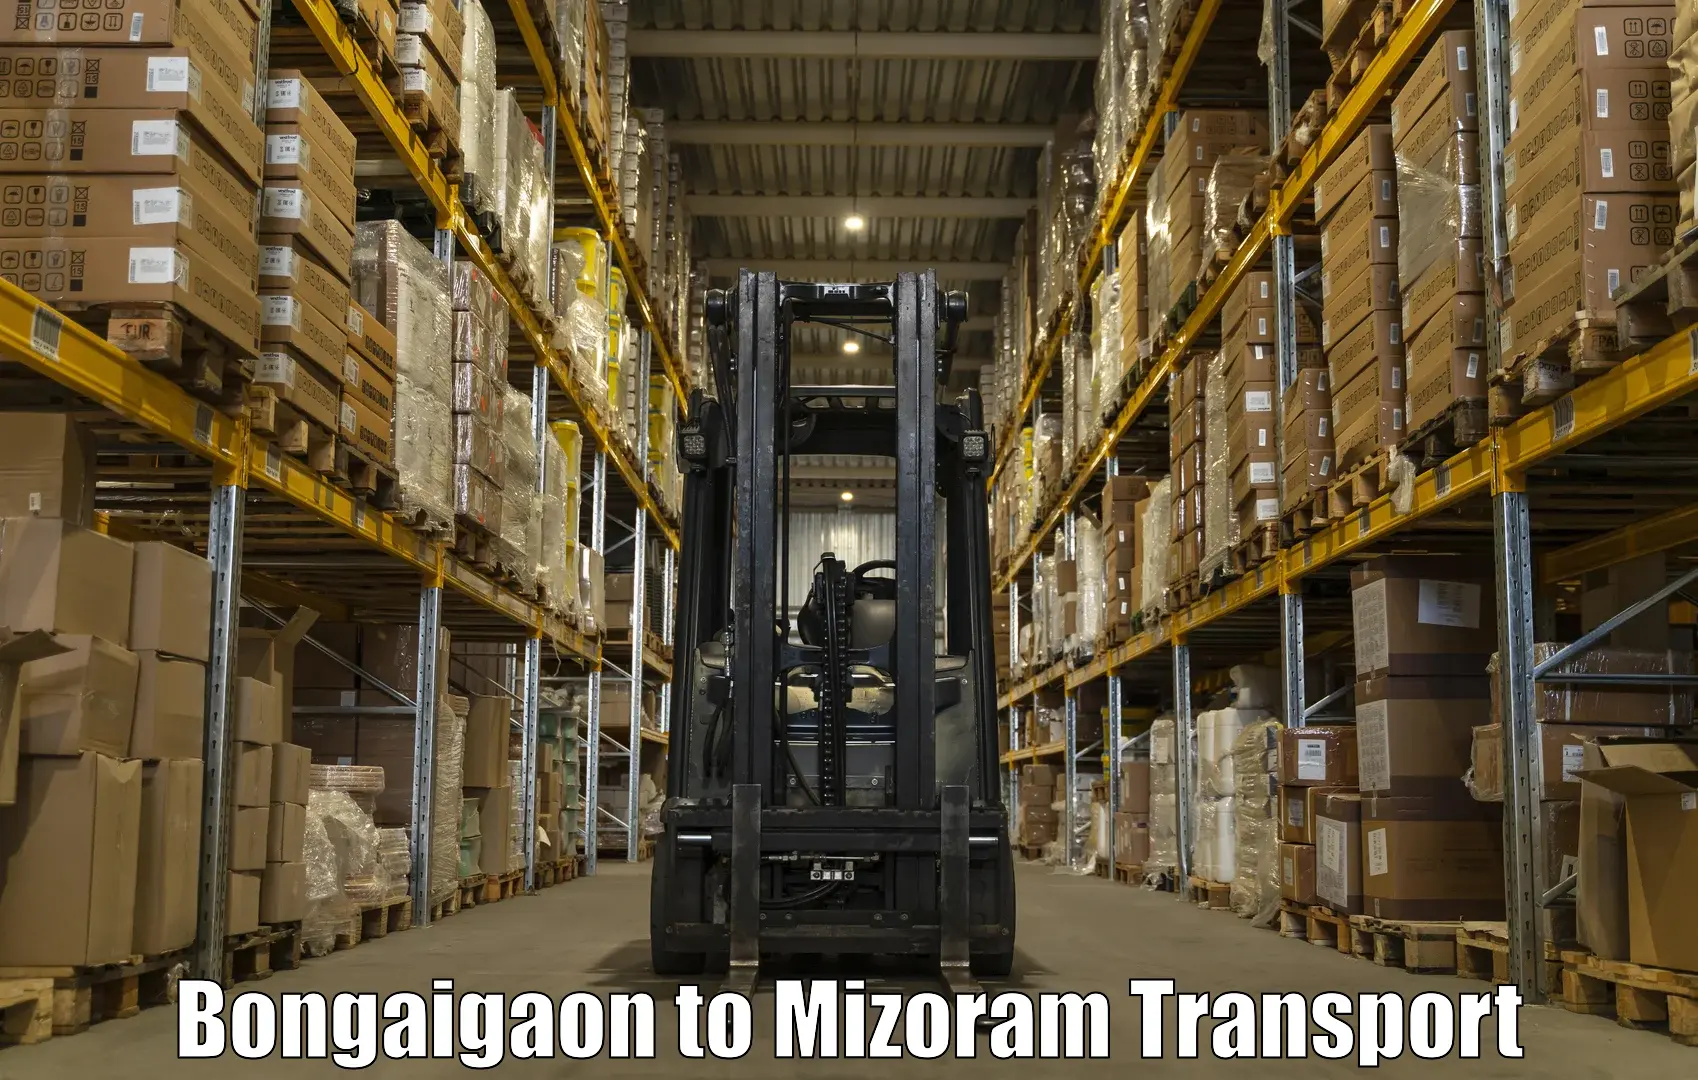 Nearby transport service Bongaigaon to Aizawl